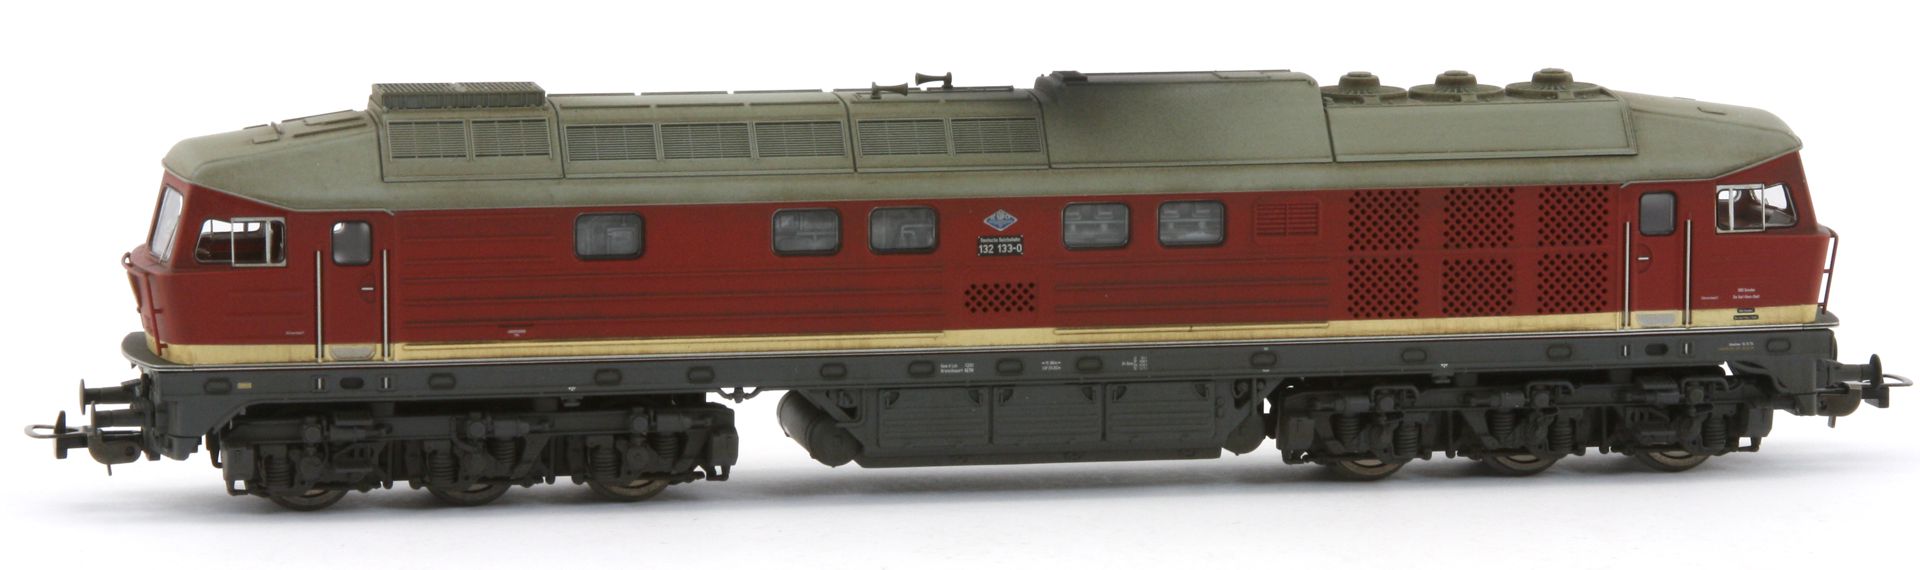 Saxonia 87041 - Diesellok 132 133-0, Auslieferungszustand, DR, Ep.IV, leicht gealtert